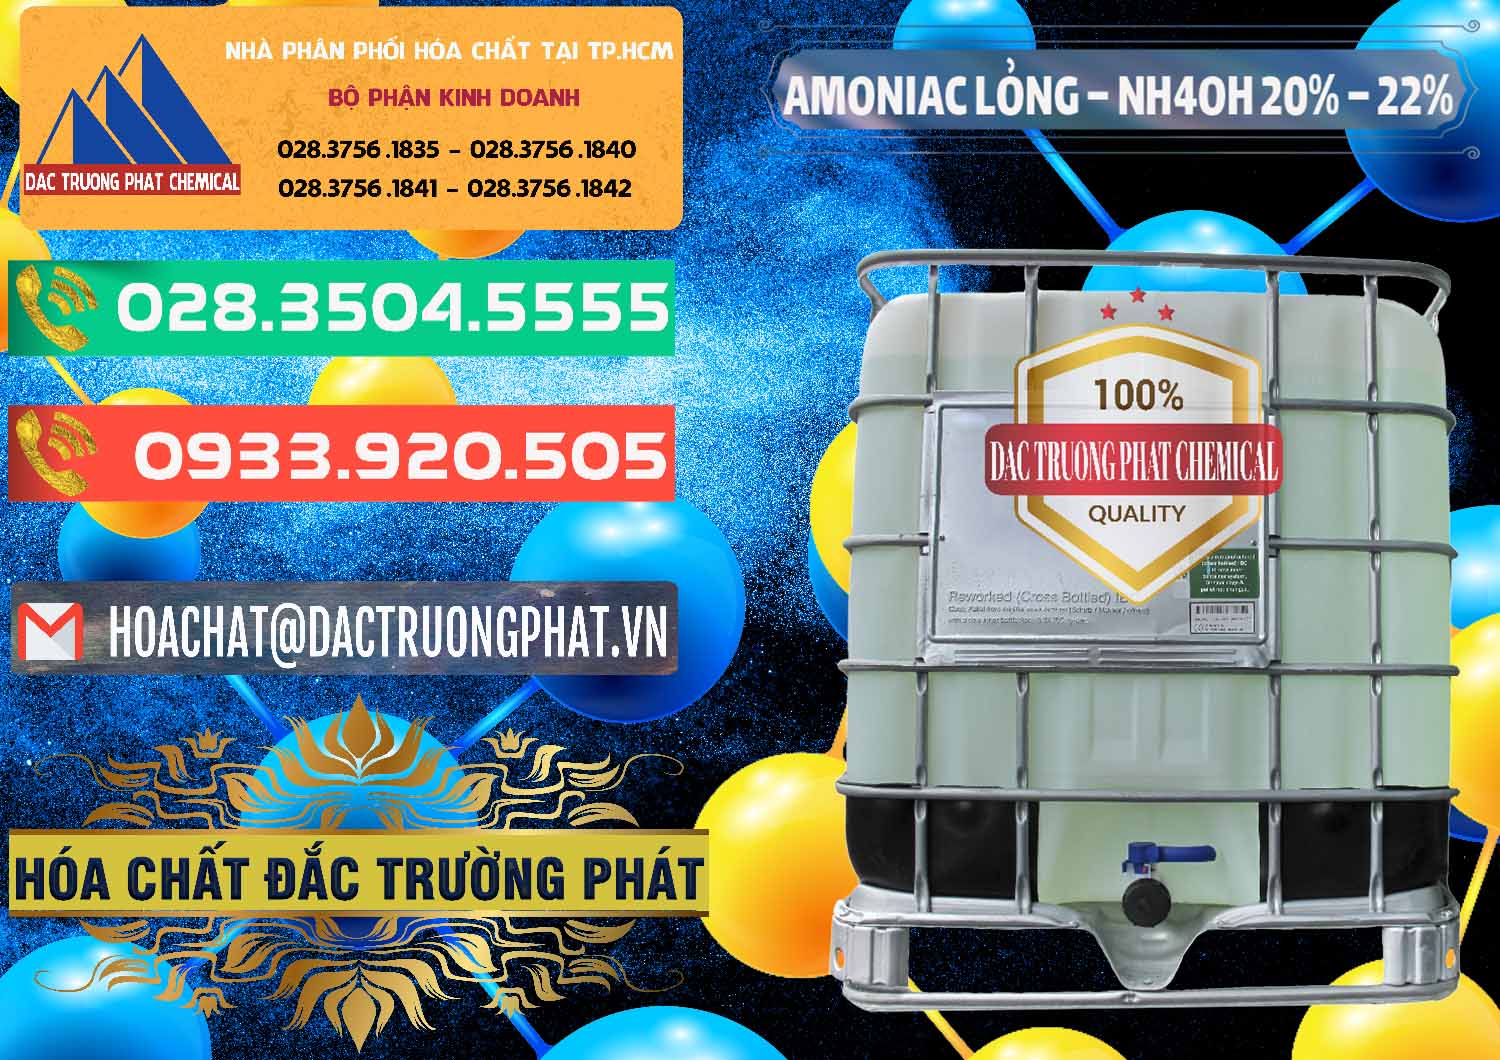 Cty chuyên kinh doanh - phân phối Amoniac Lỏng – NH4OH 20% – 22% Việt Nam - 0185 - Chuyên cung ứng ( phân phối ) hóa chất tại TP.HCM - congtyhoachat.com.vn